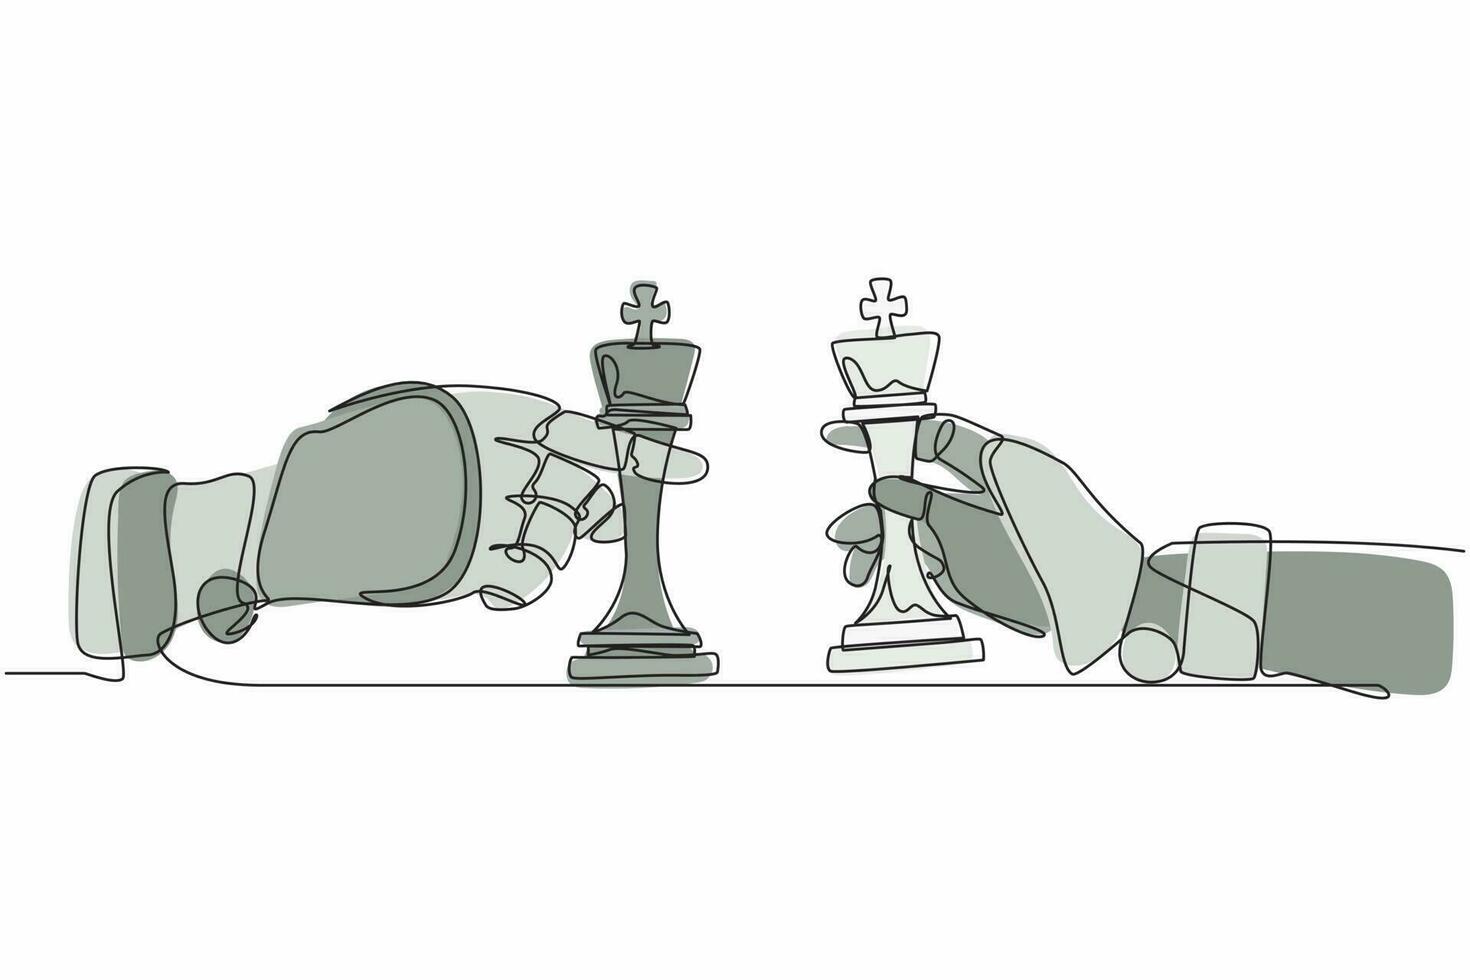 enkele doorlopende lijntekening robots handen met koning schaakstuk en de andere hand ook. robotica kunstmatige intelligentie. elektronische technologie-industrie. één lijn tekenen ontwerp vectorillustratie vector